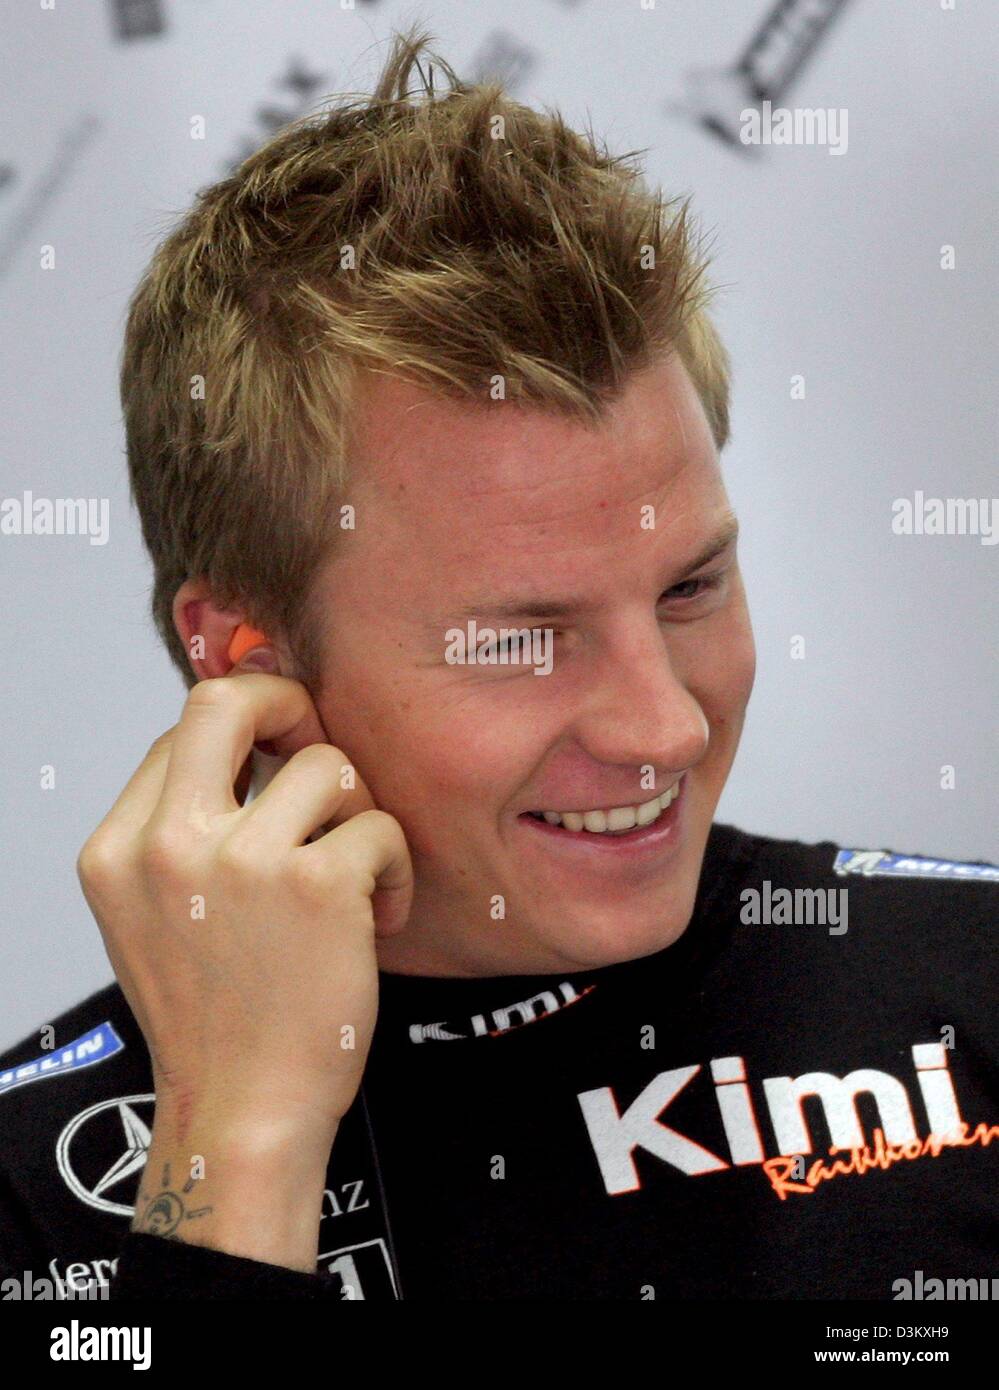 (dpa) - Finnish Formula One driver Kimi Raikkonen of McLaren Mercedes ...